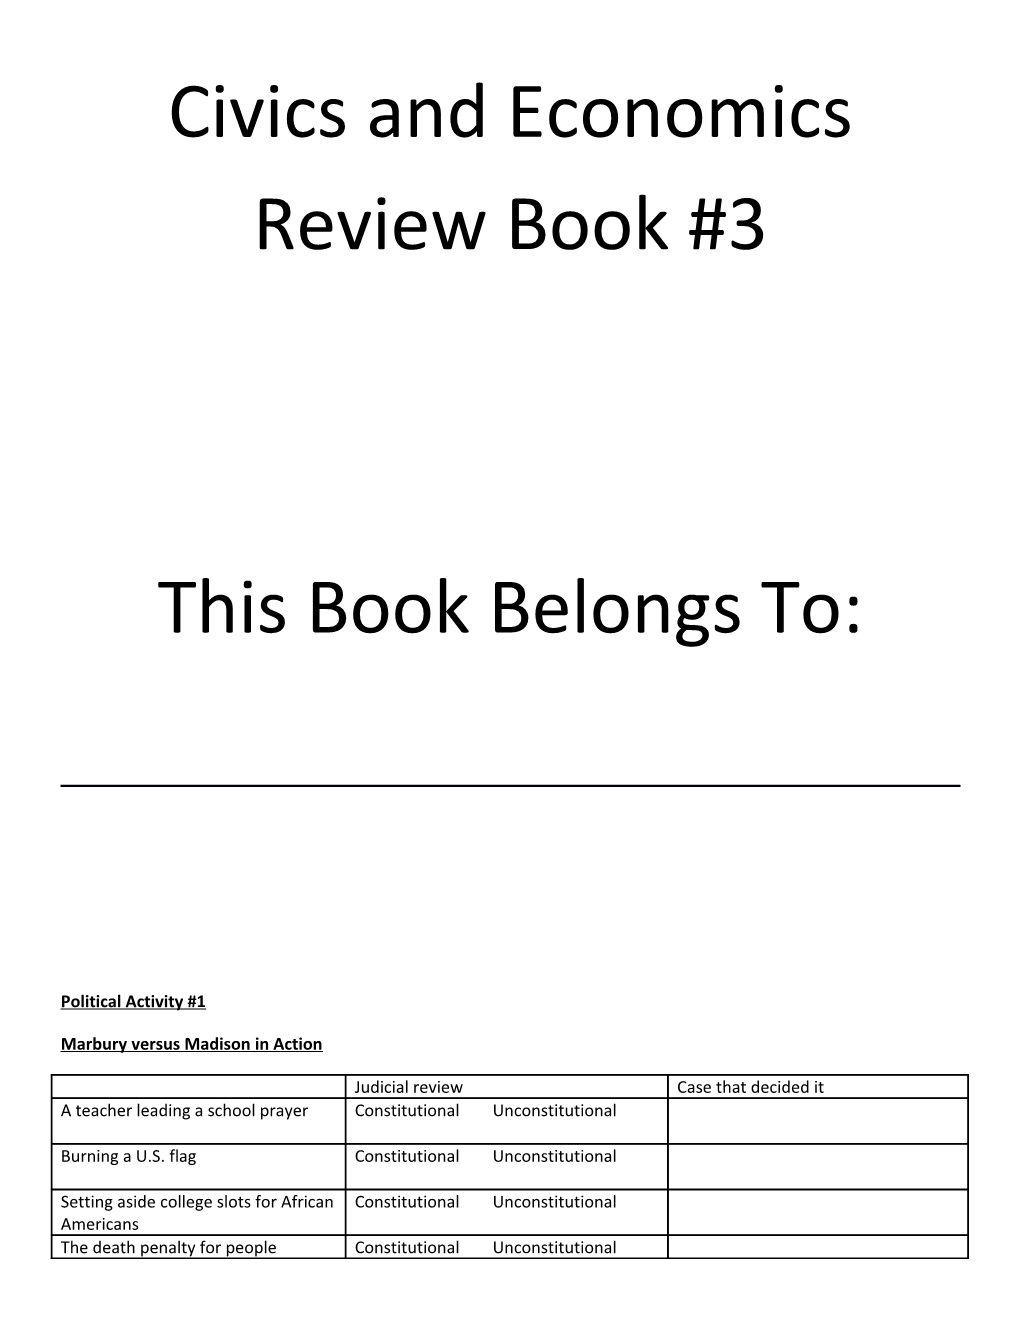 Civics and Economics Review Book #3